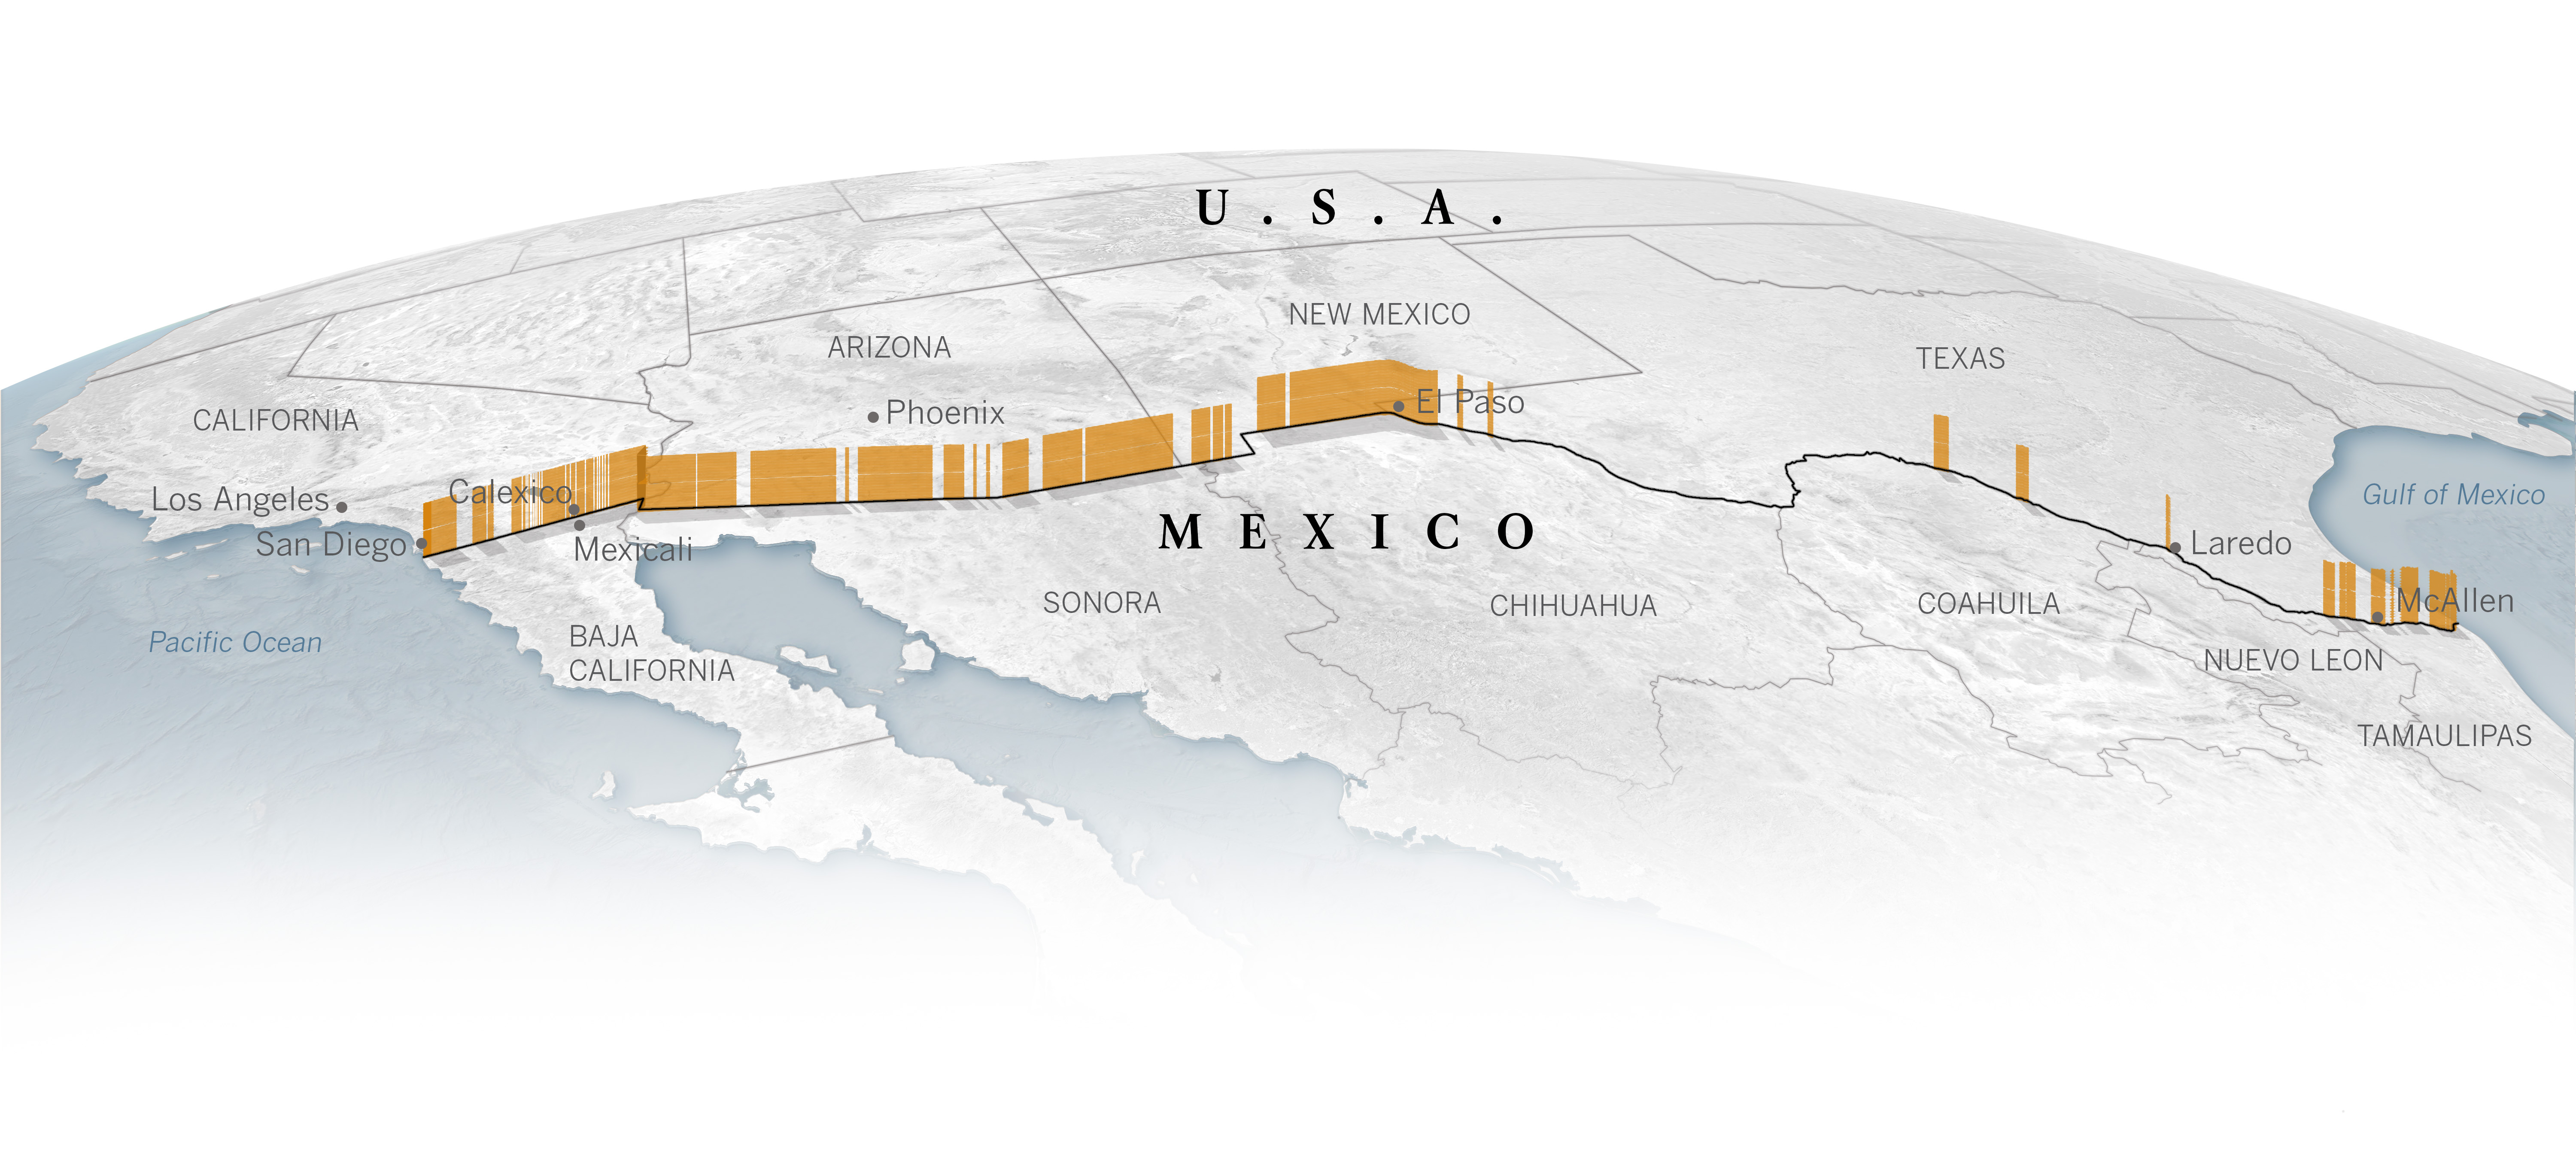 california mexico border map